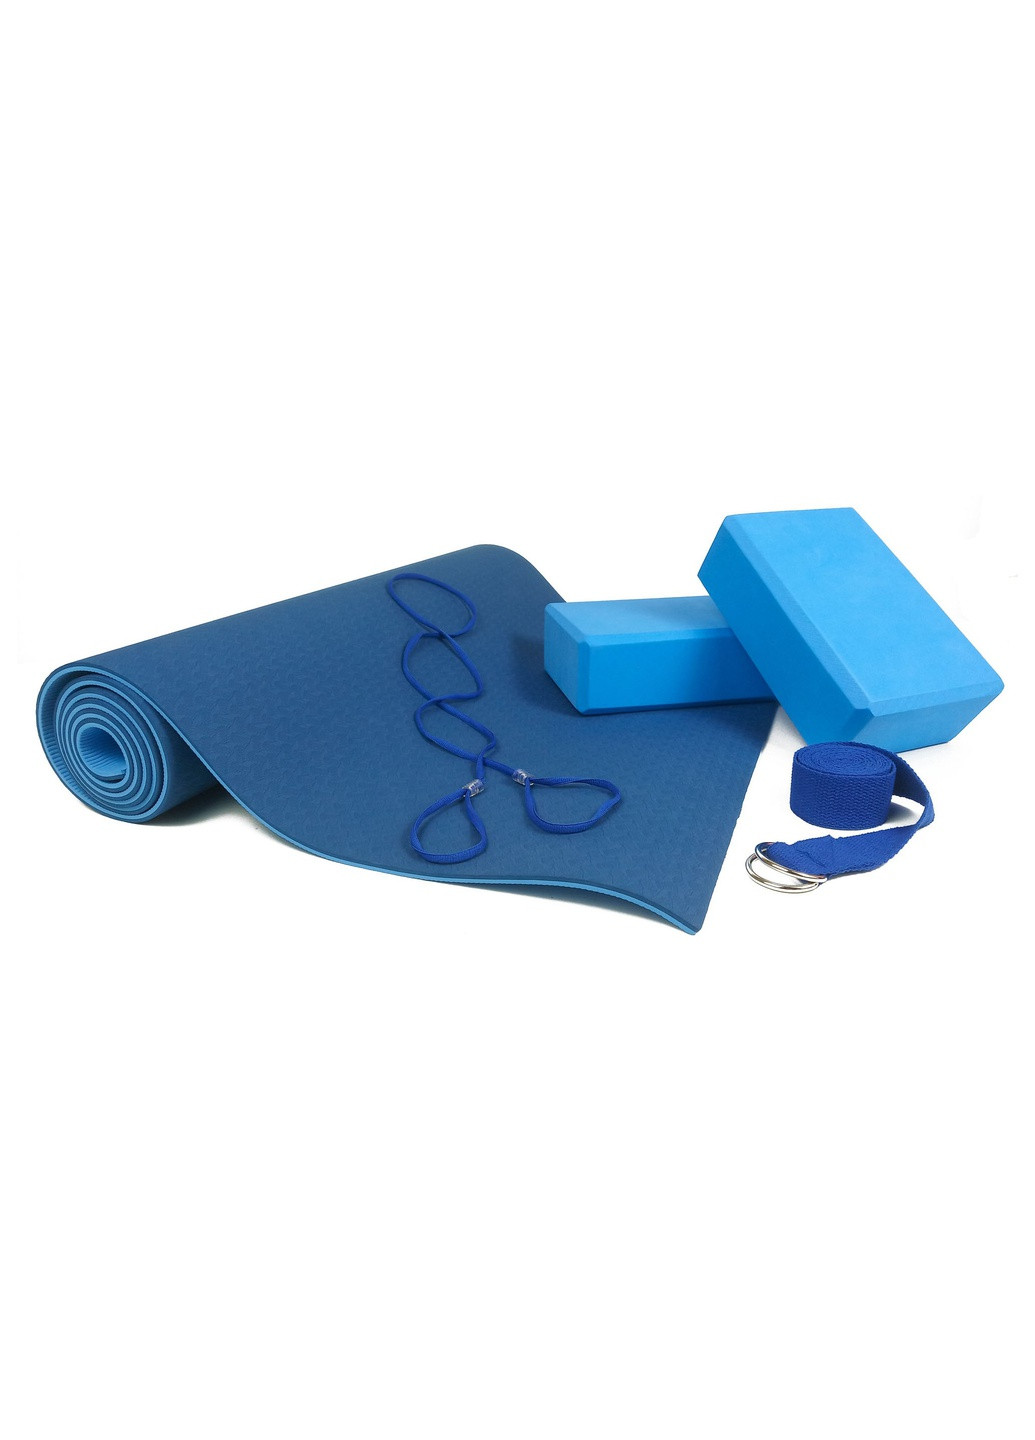 Набор для йоги PRO синий - коврик для йоги (каремат, йогамат для фитнеса), два блока (кирпича) и ремень (лямка) EasyFit (241229816)